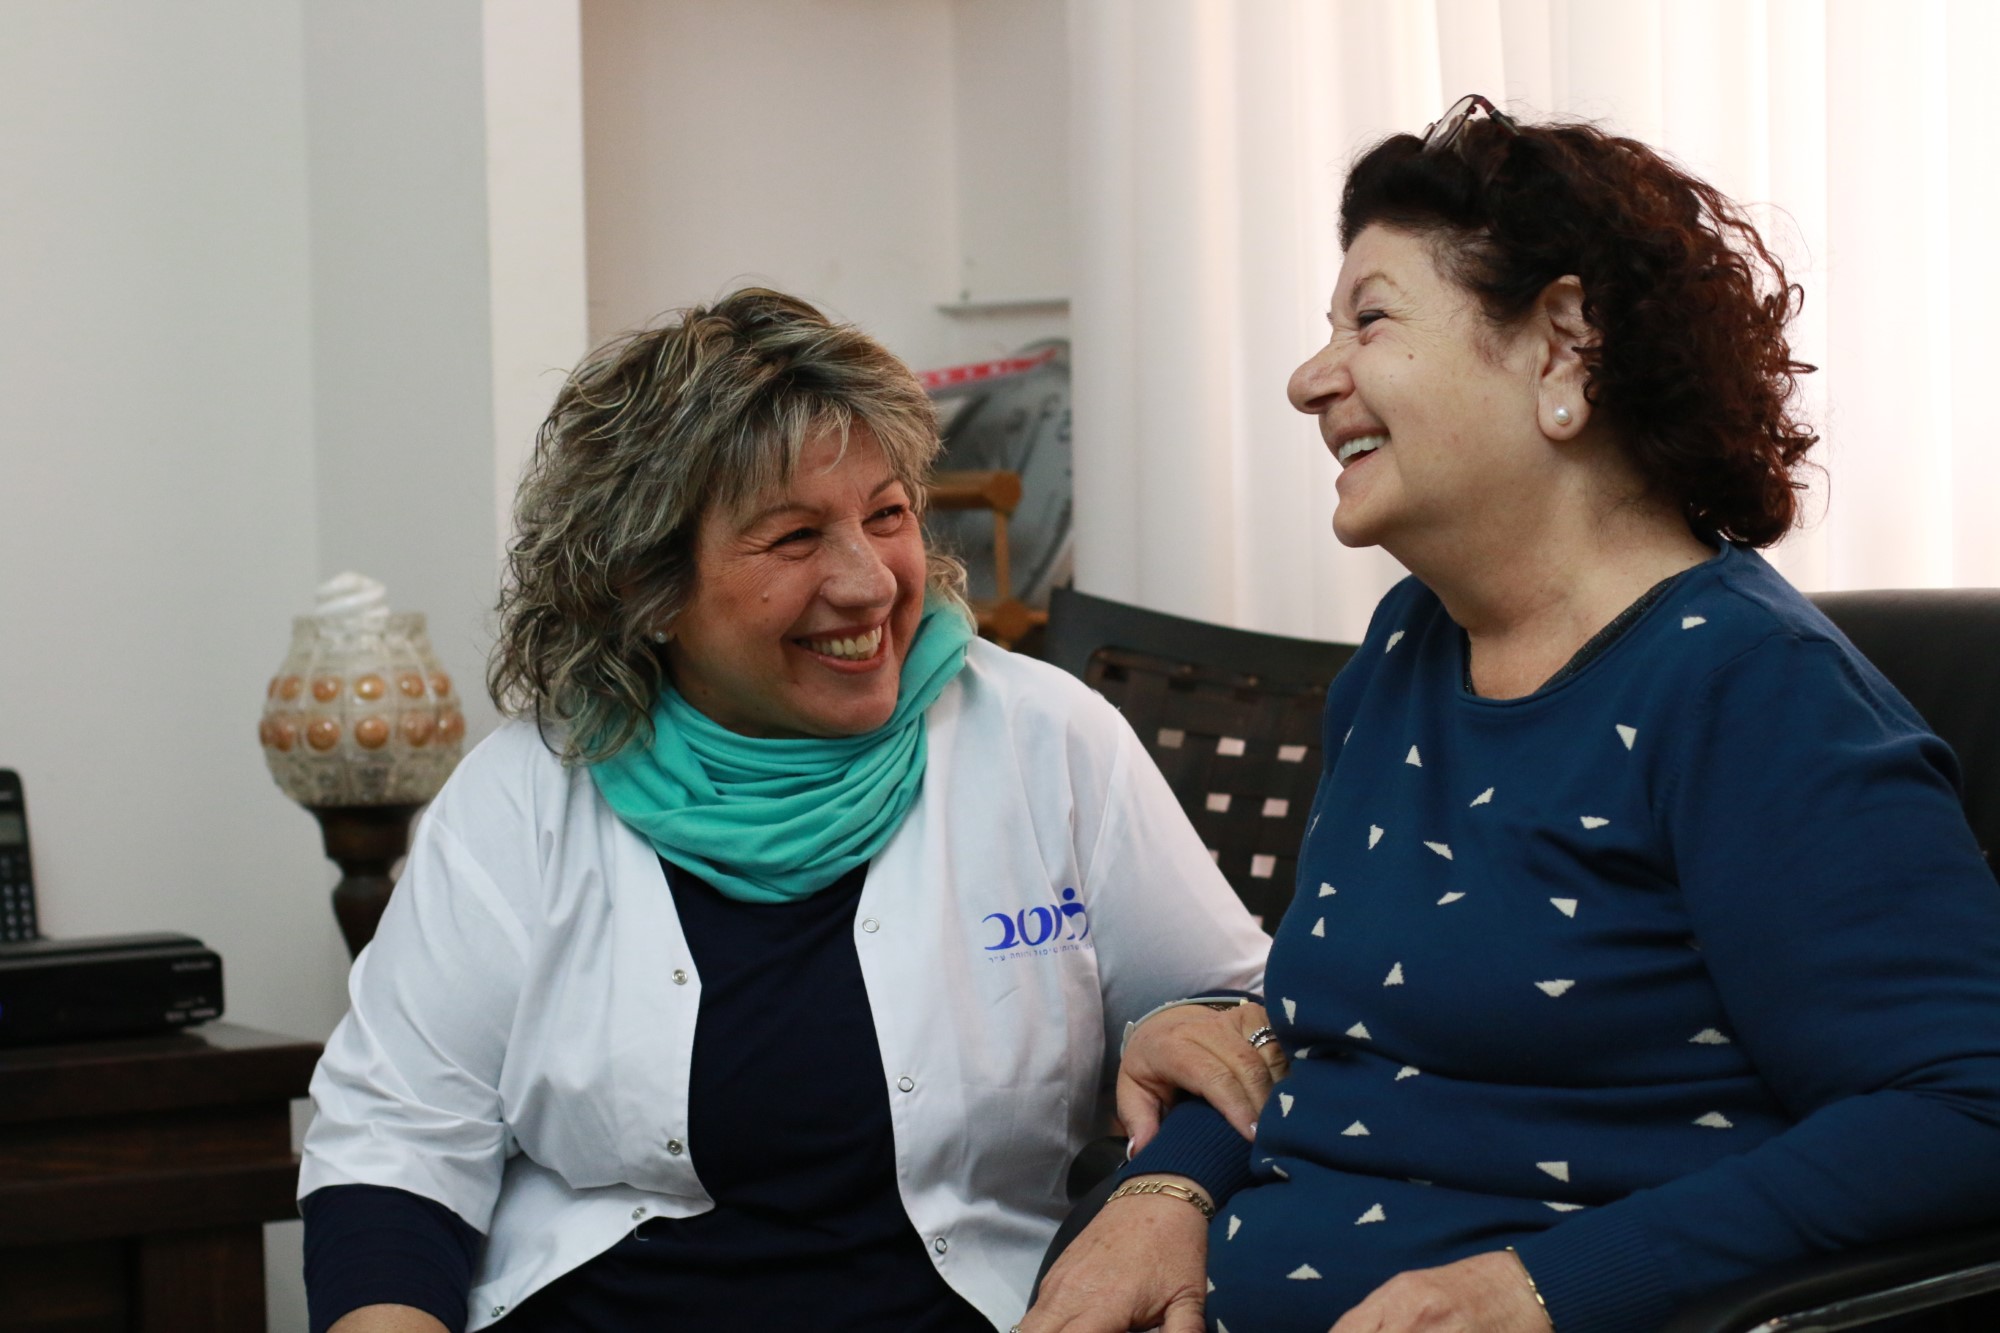 עמותת מטב גדלה ומגייסת  מטפלות ומטפלים סיעודיים לסיוע לקשישים בבאר שבע והאיזור